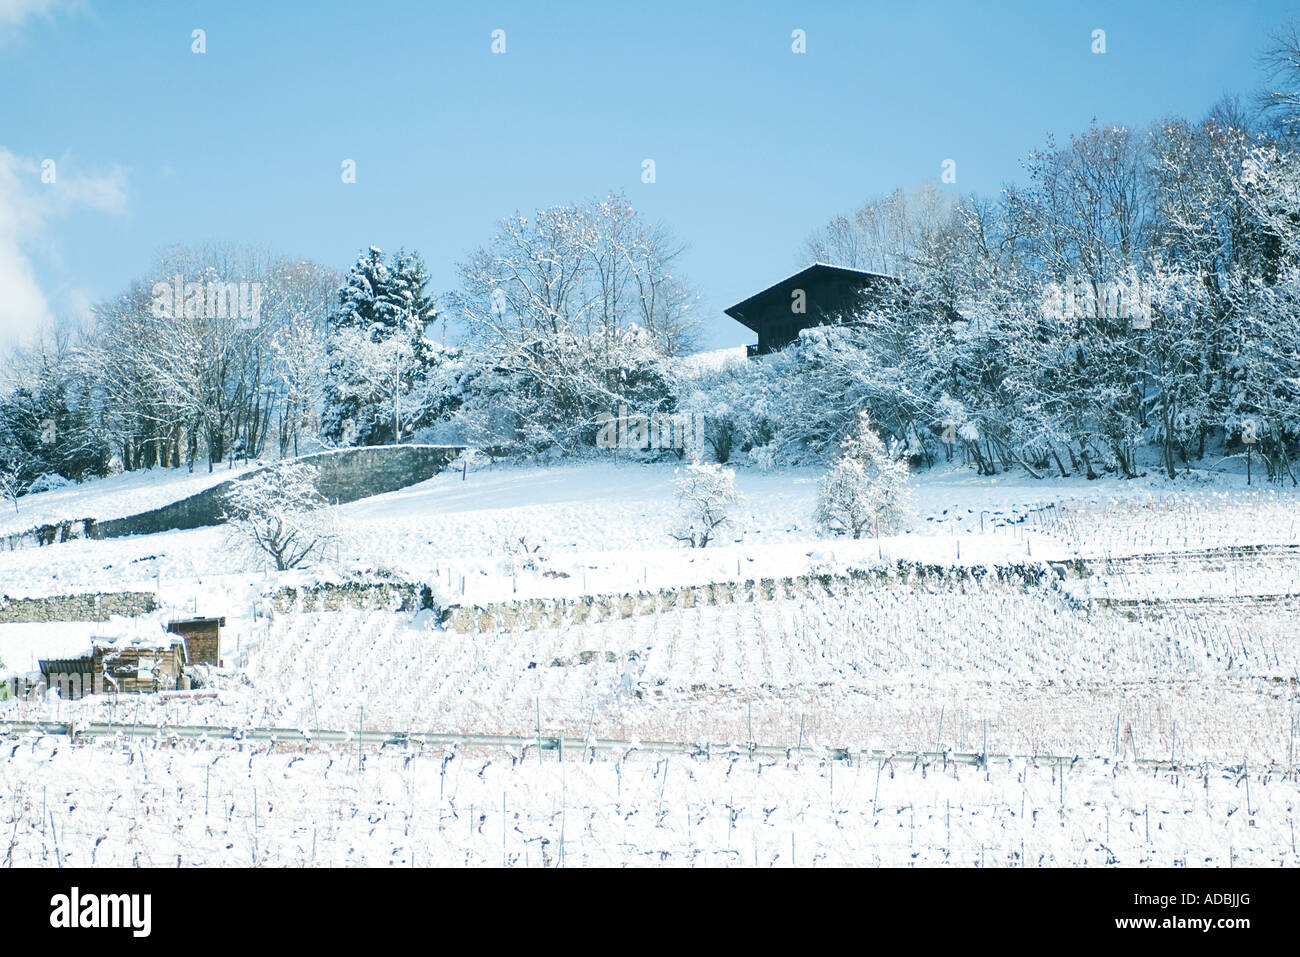 La Suisse, canton de Vaud, de vignes et de chalet dans la neige Banque D'Images